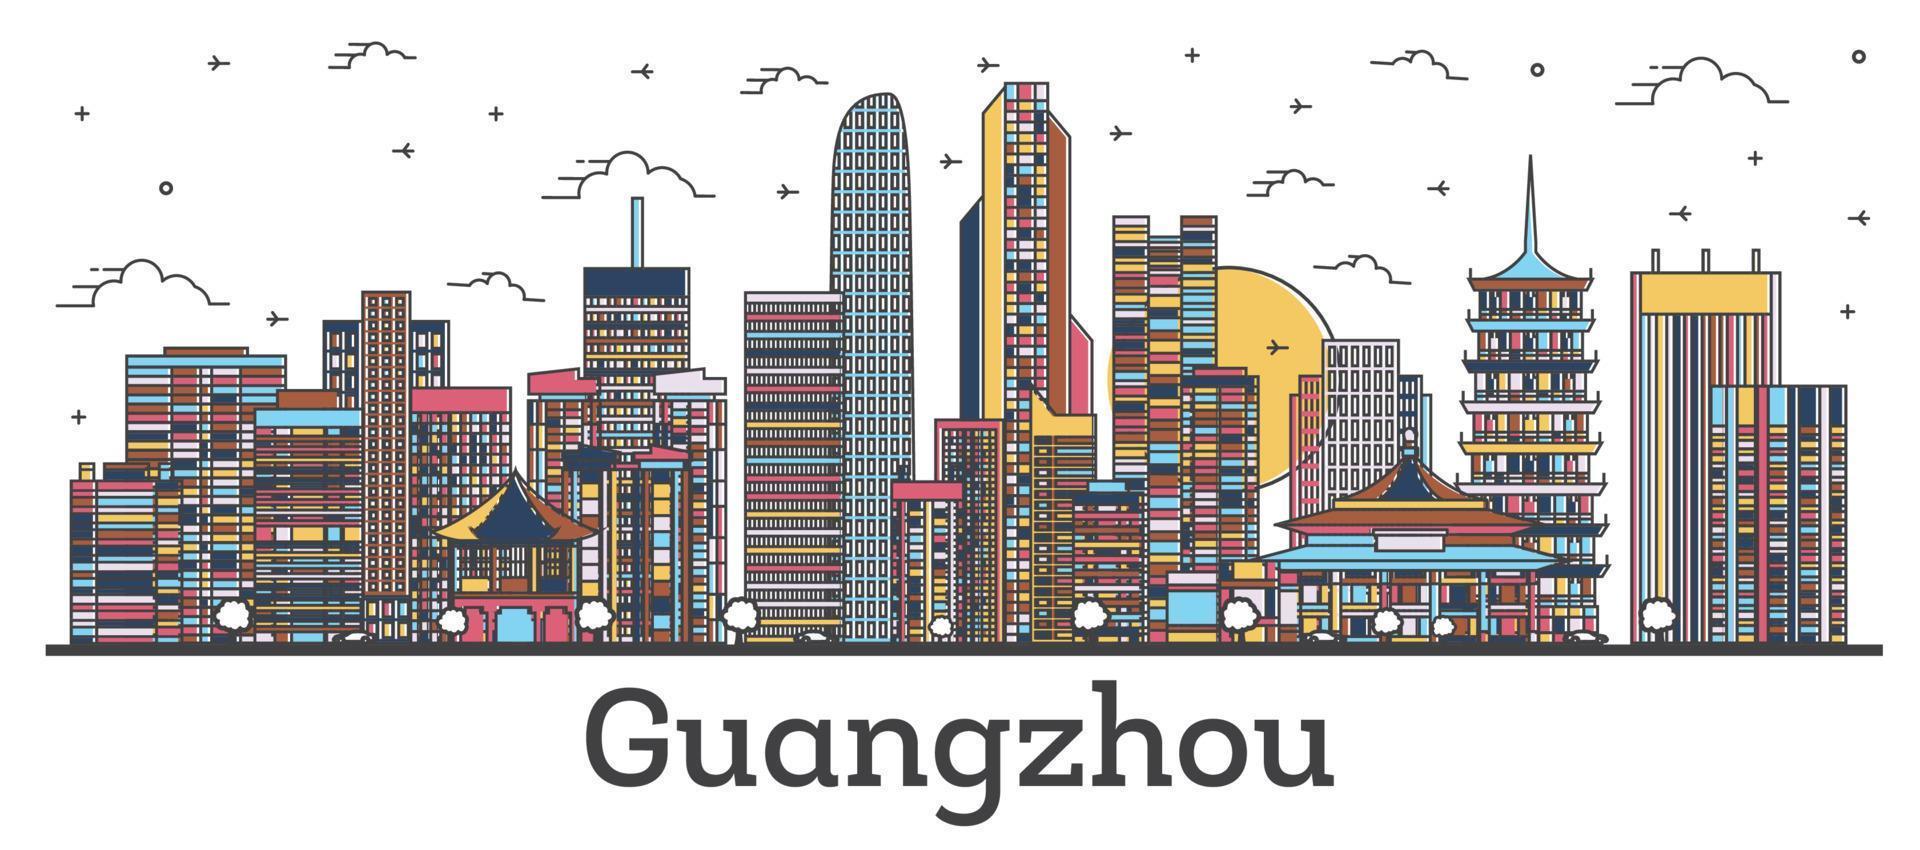 delineie o horizonte da cidade de guangzhou china com edifícios coloridos isolados em branco. vetor